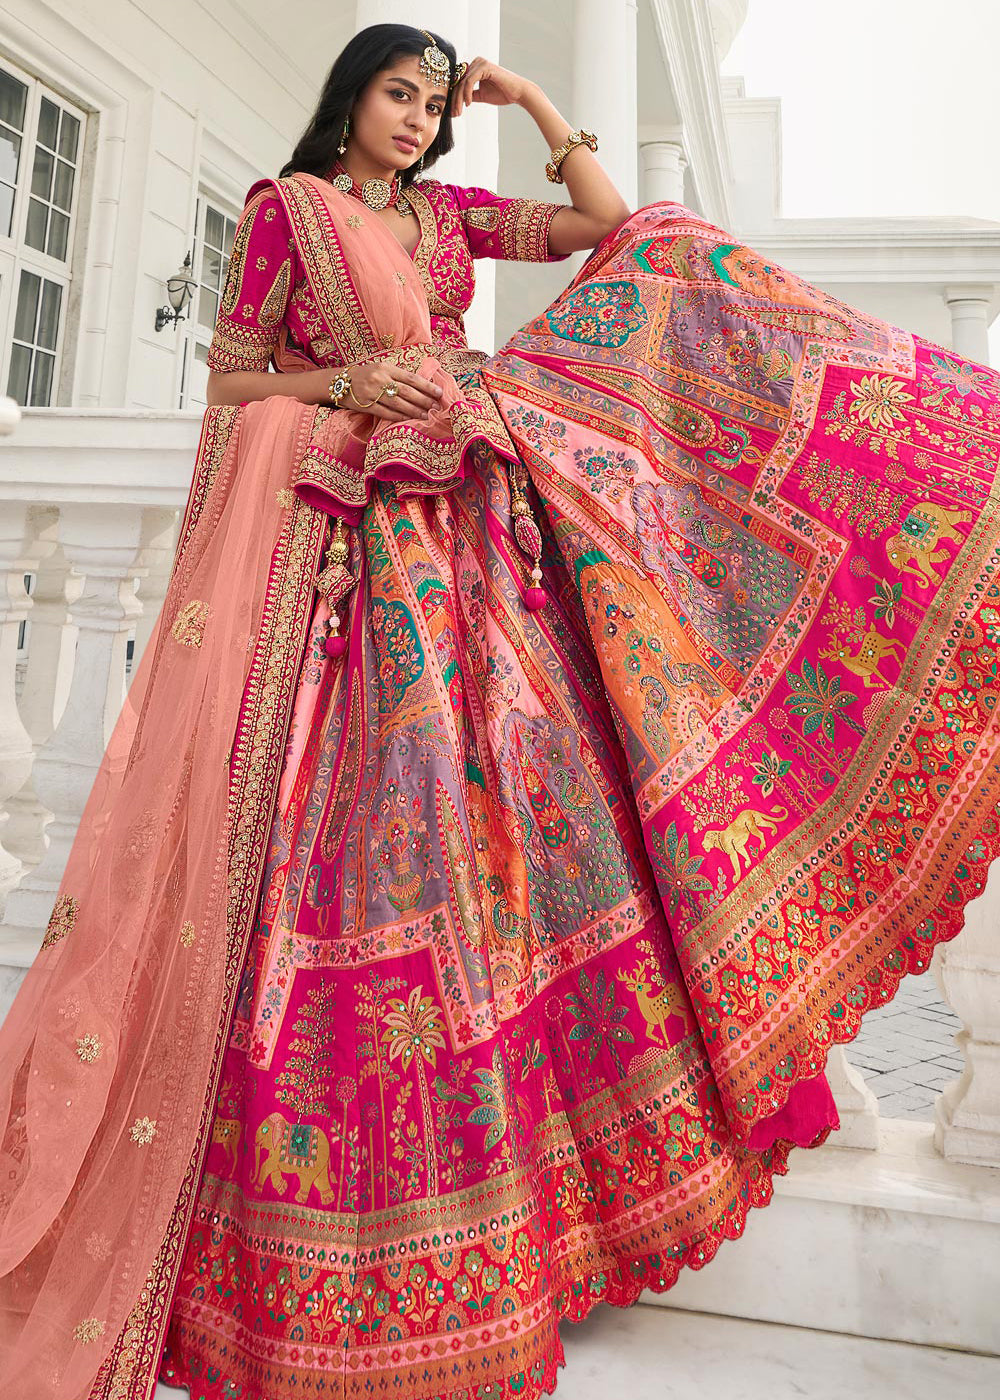 20 Best Plus Size Saree Blouse Designs for Curvy Women | Plus size wedding  outfits, Long blouse designs, Saree designs party wear